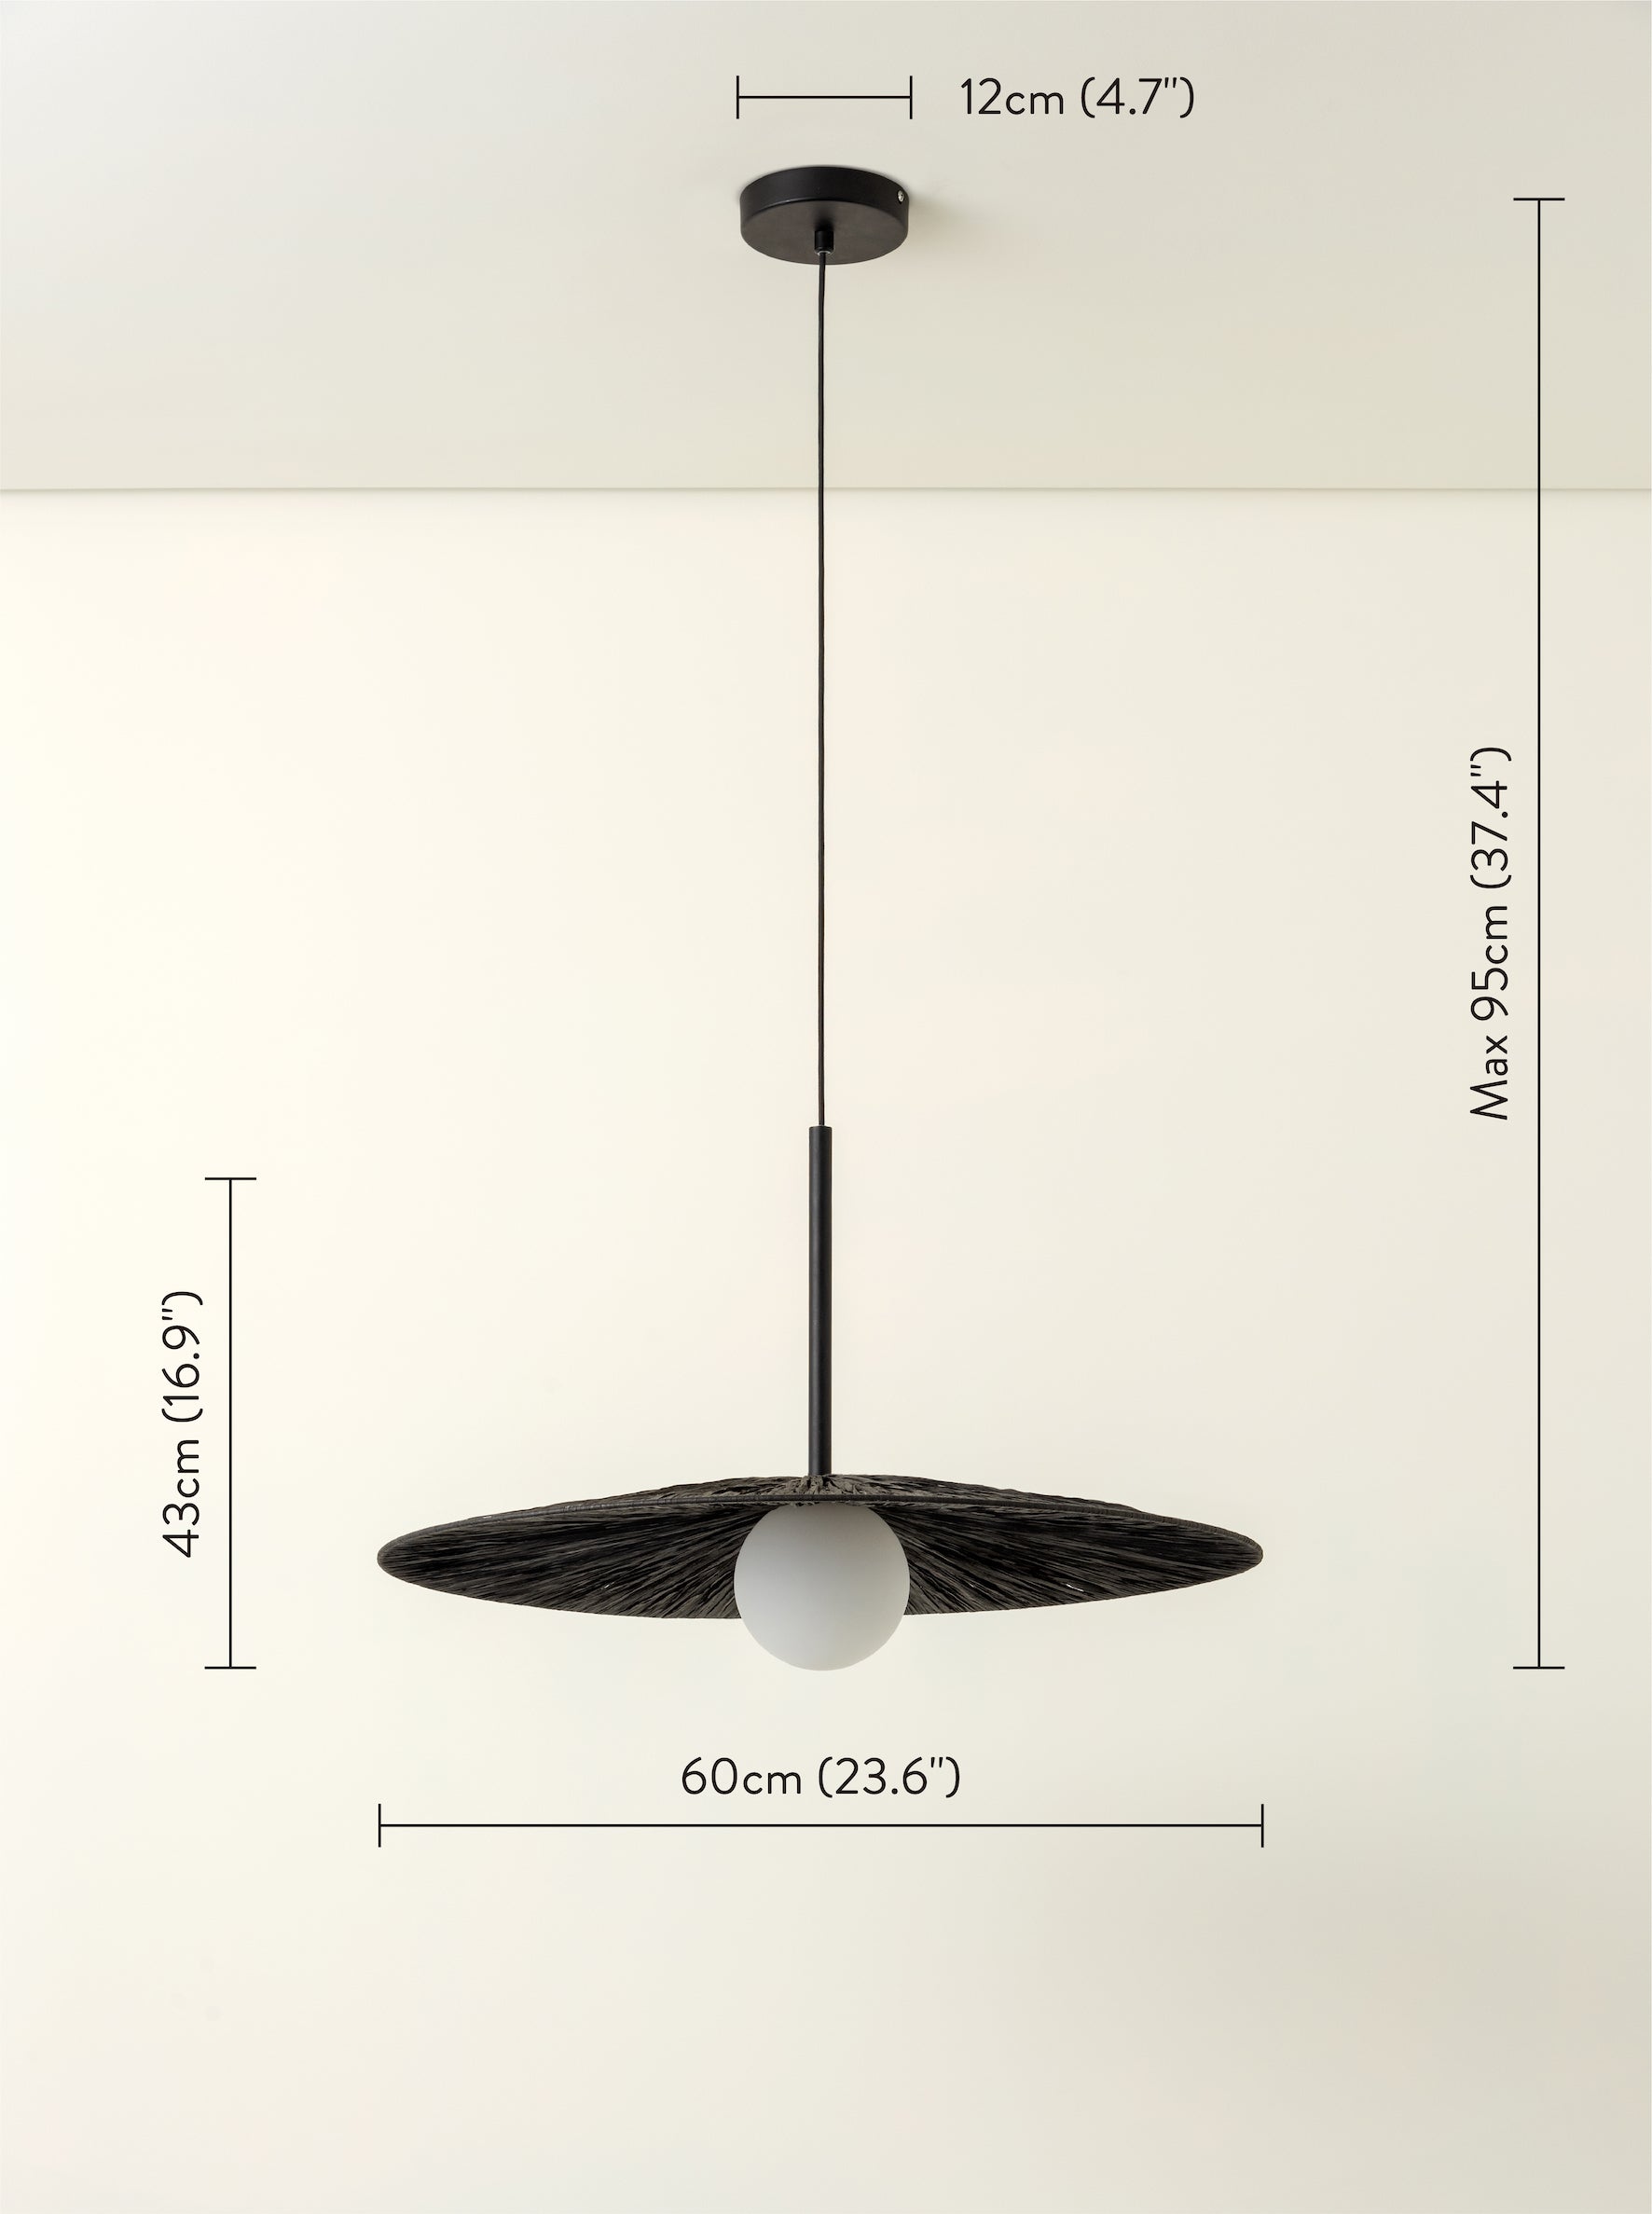 Ridotti - 1 light matt black raffia pendant | Ceiling Light | Lights & Lamps | UK | Modern Affordable Designer Lighting